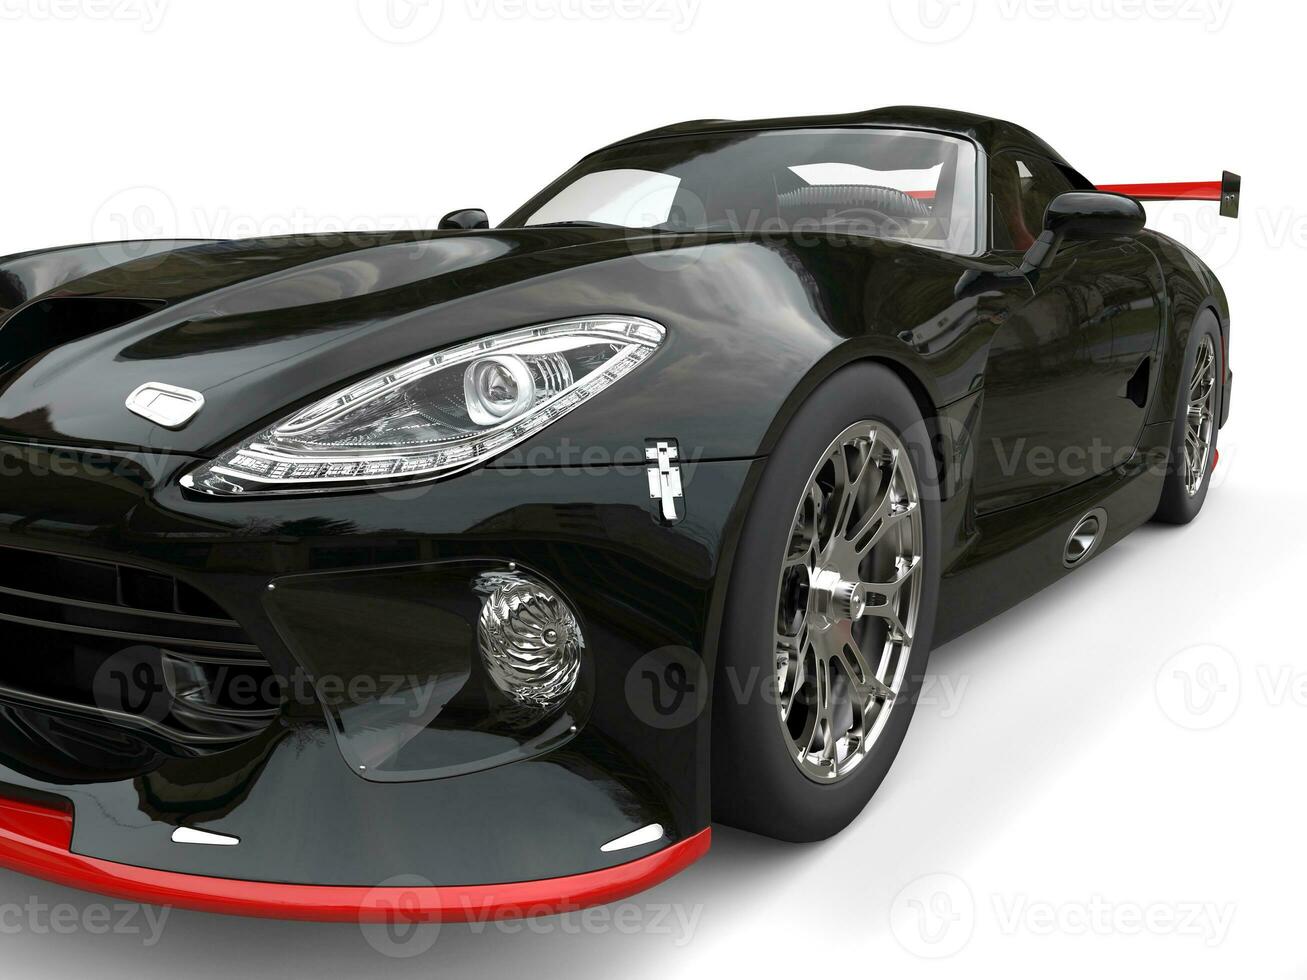 superbil svart med röd detaljer - strålkastare extrem närbild skott - 3d illustration foto